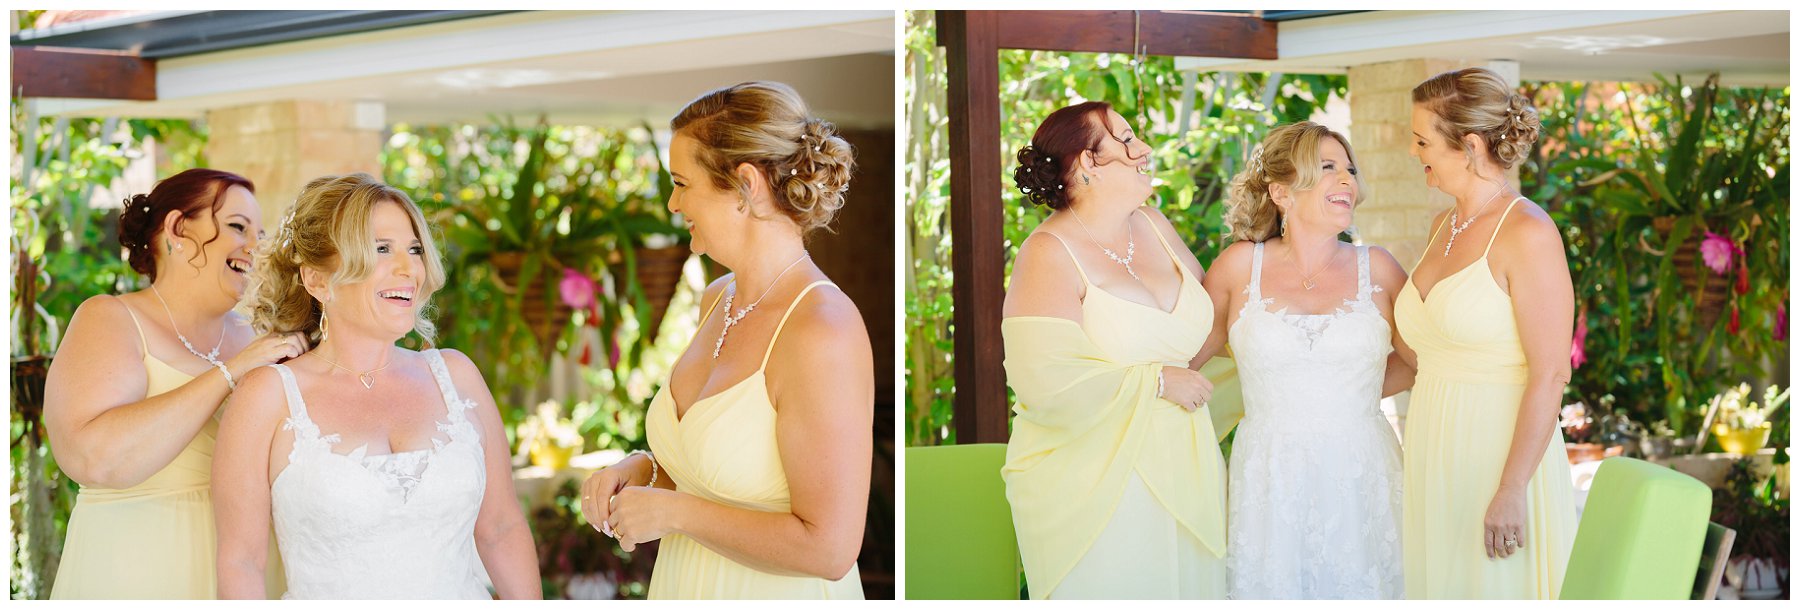 yellow bridesmaid dress 